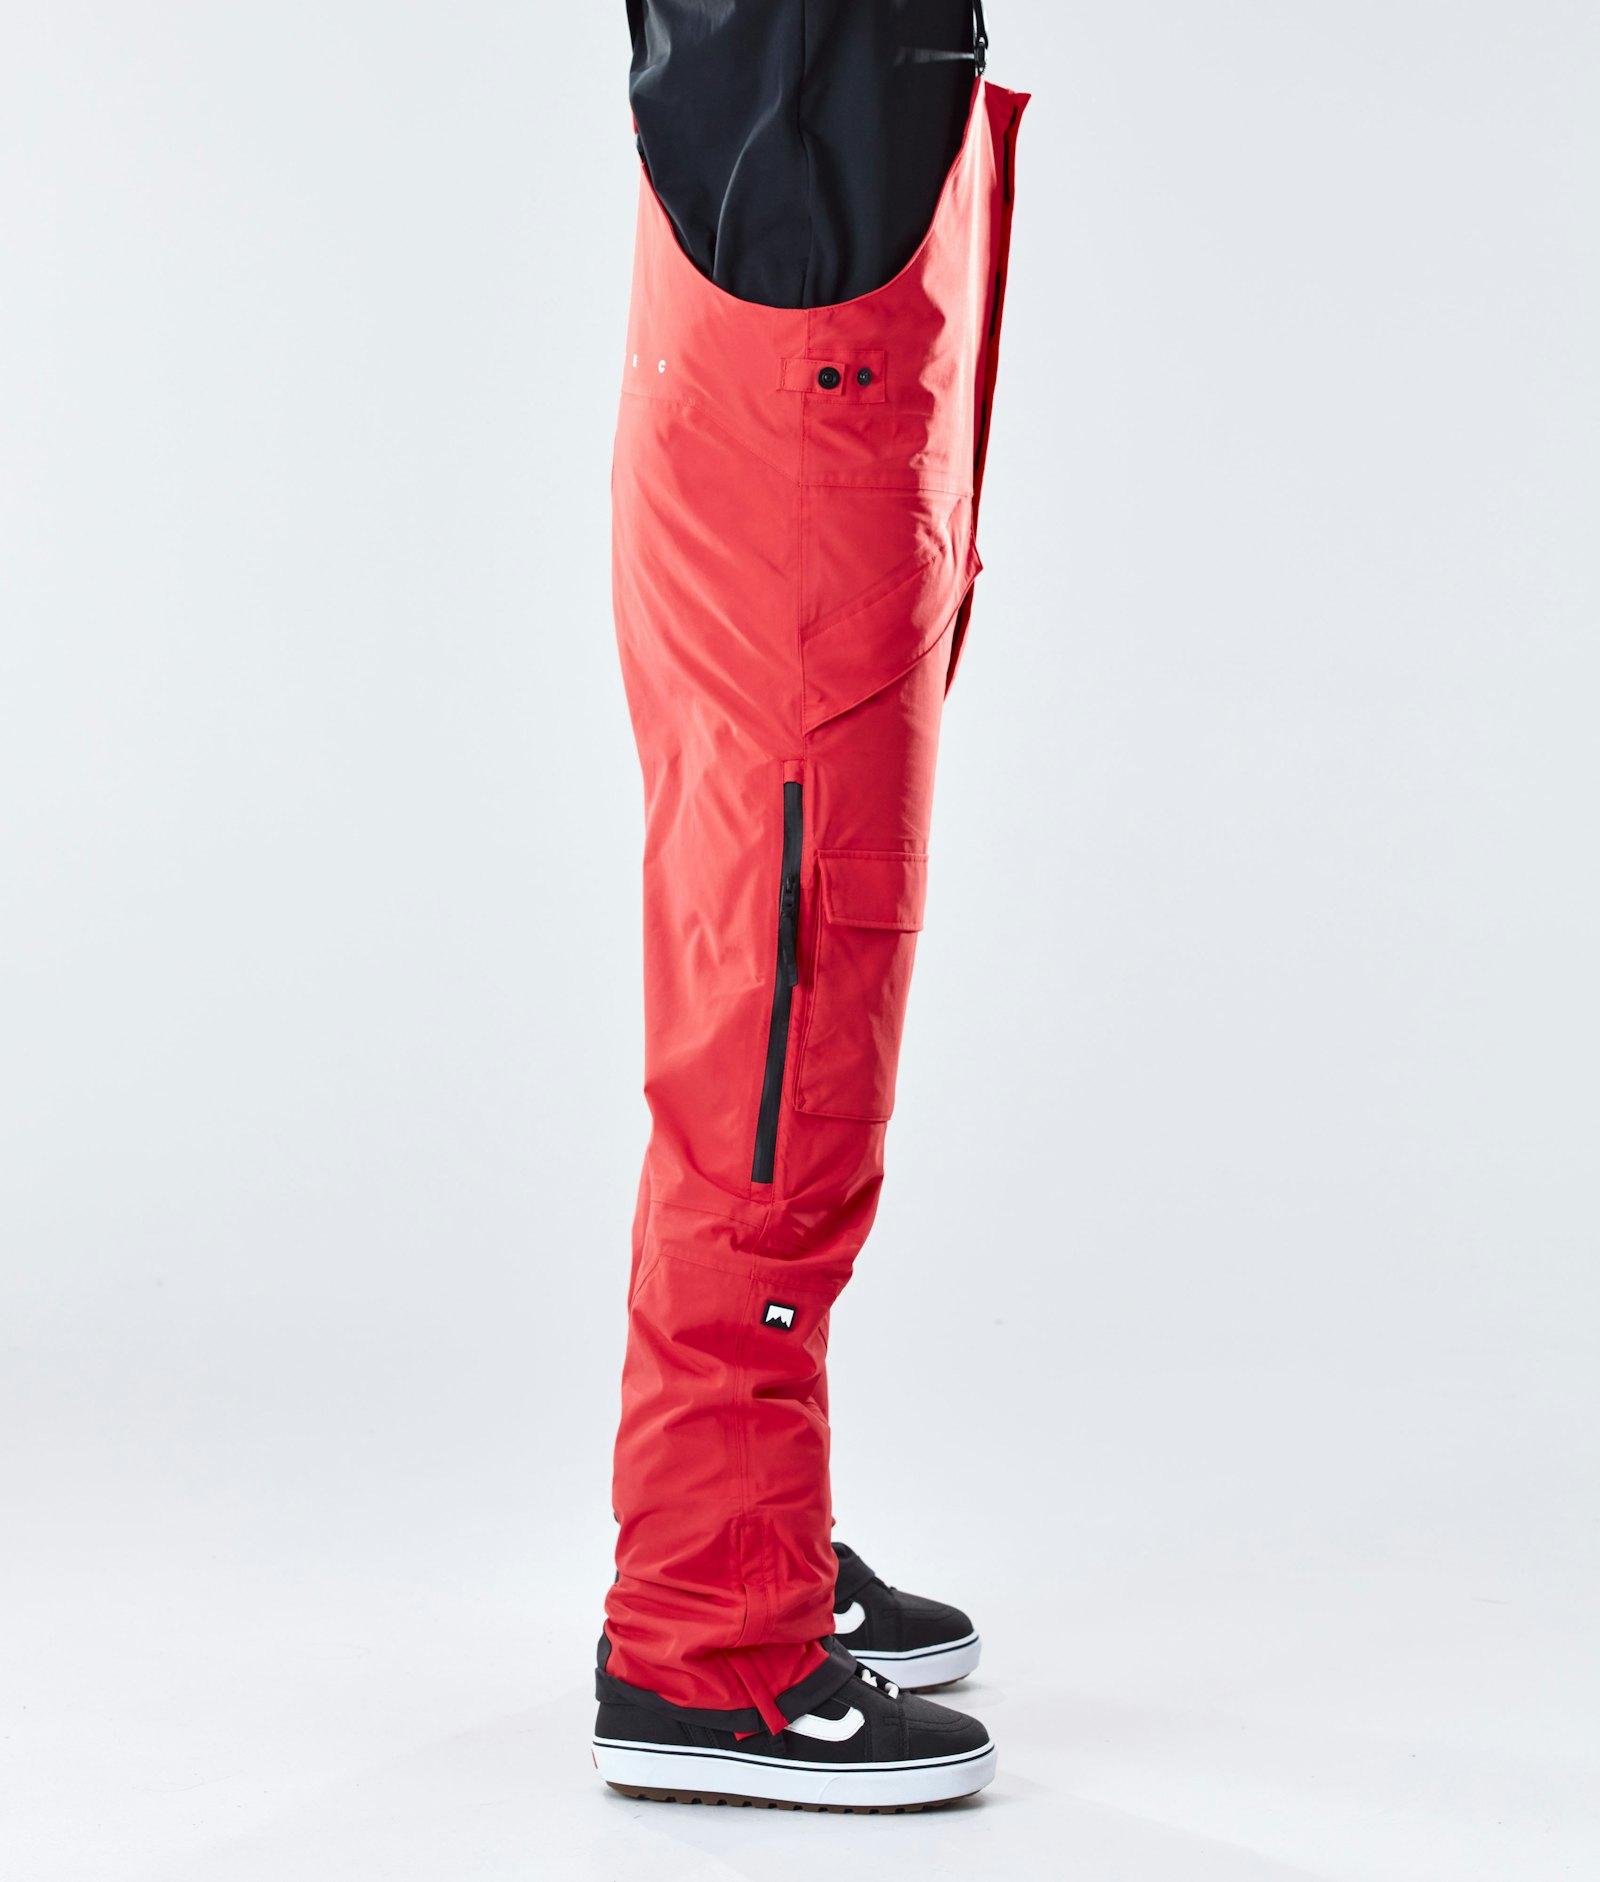 Fawk 2020 Spodnie Snowboardowe Mężczyźni Red Renewed, Zdjęcie 2 z 6